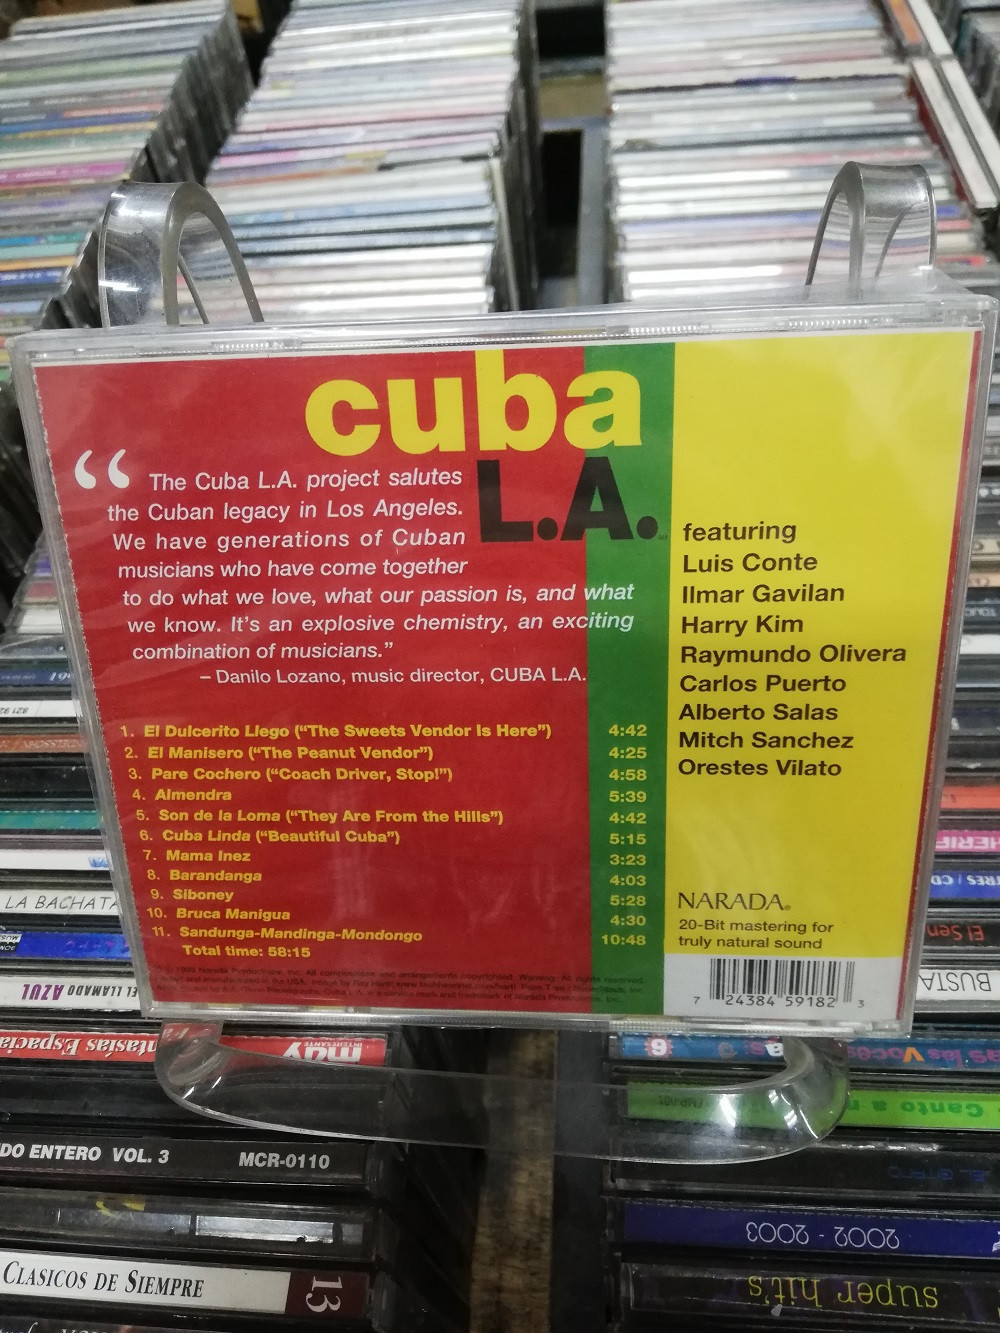 Imagen CD NUEVO CUBA L.A. 2